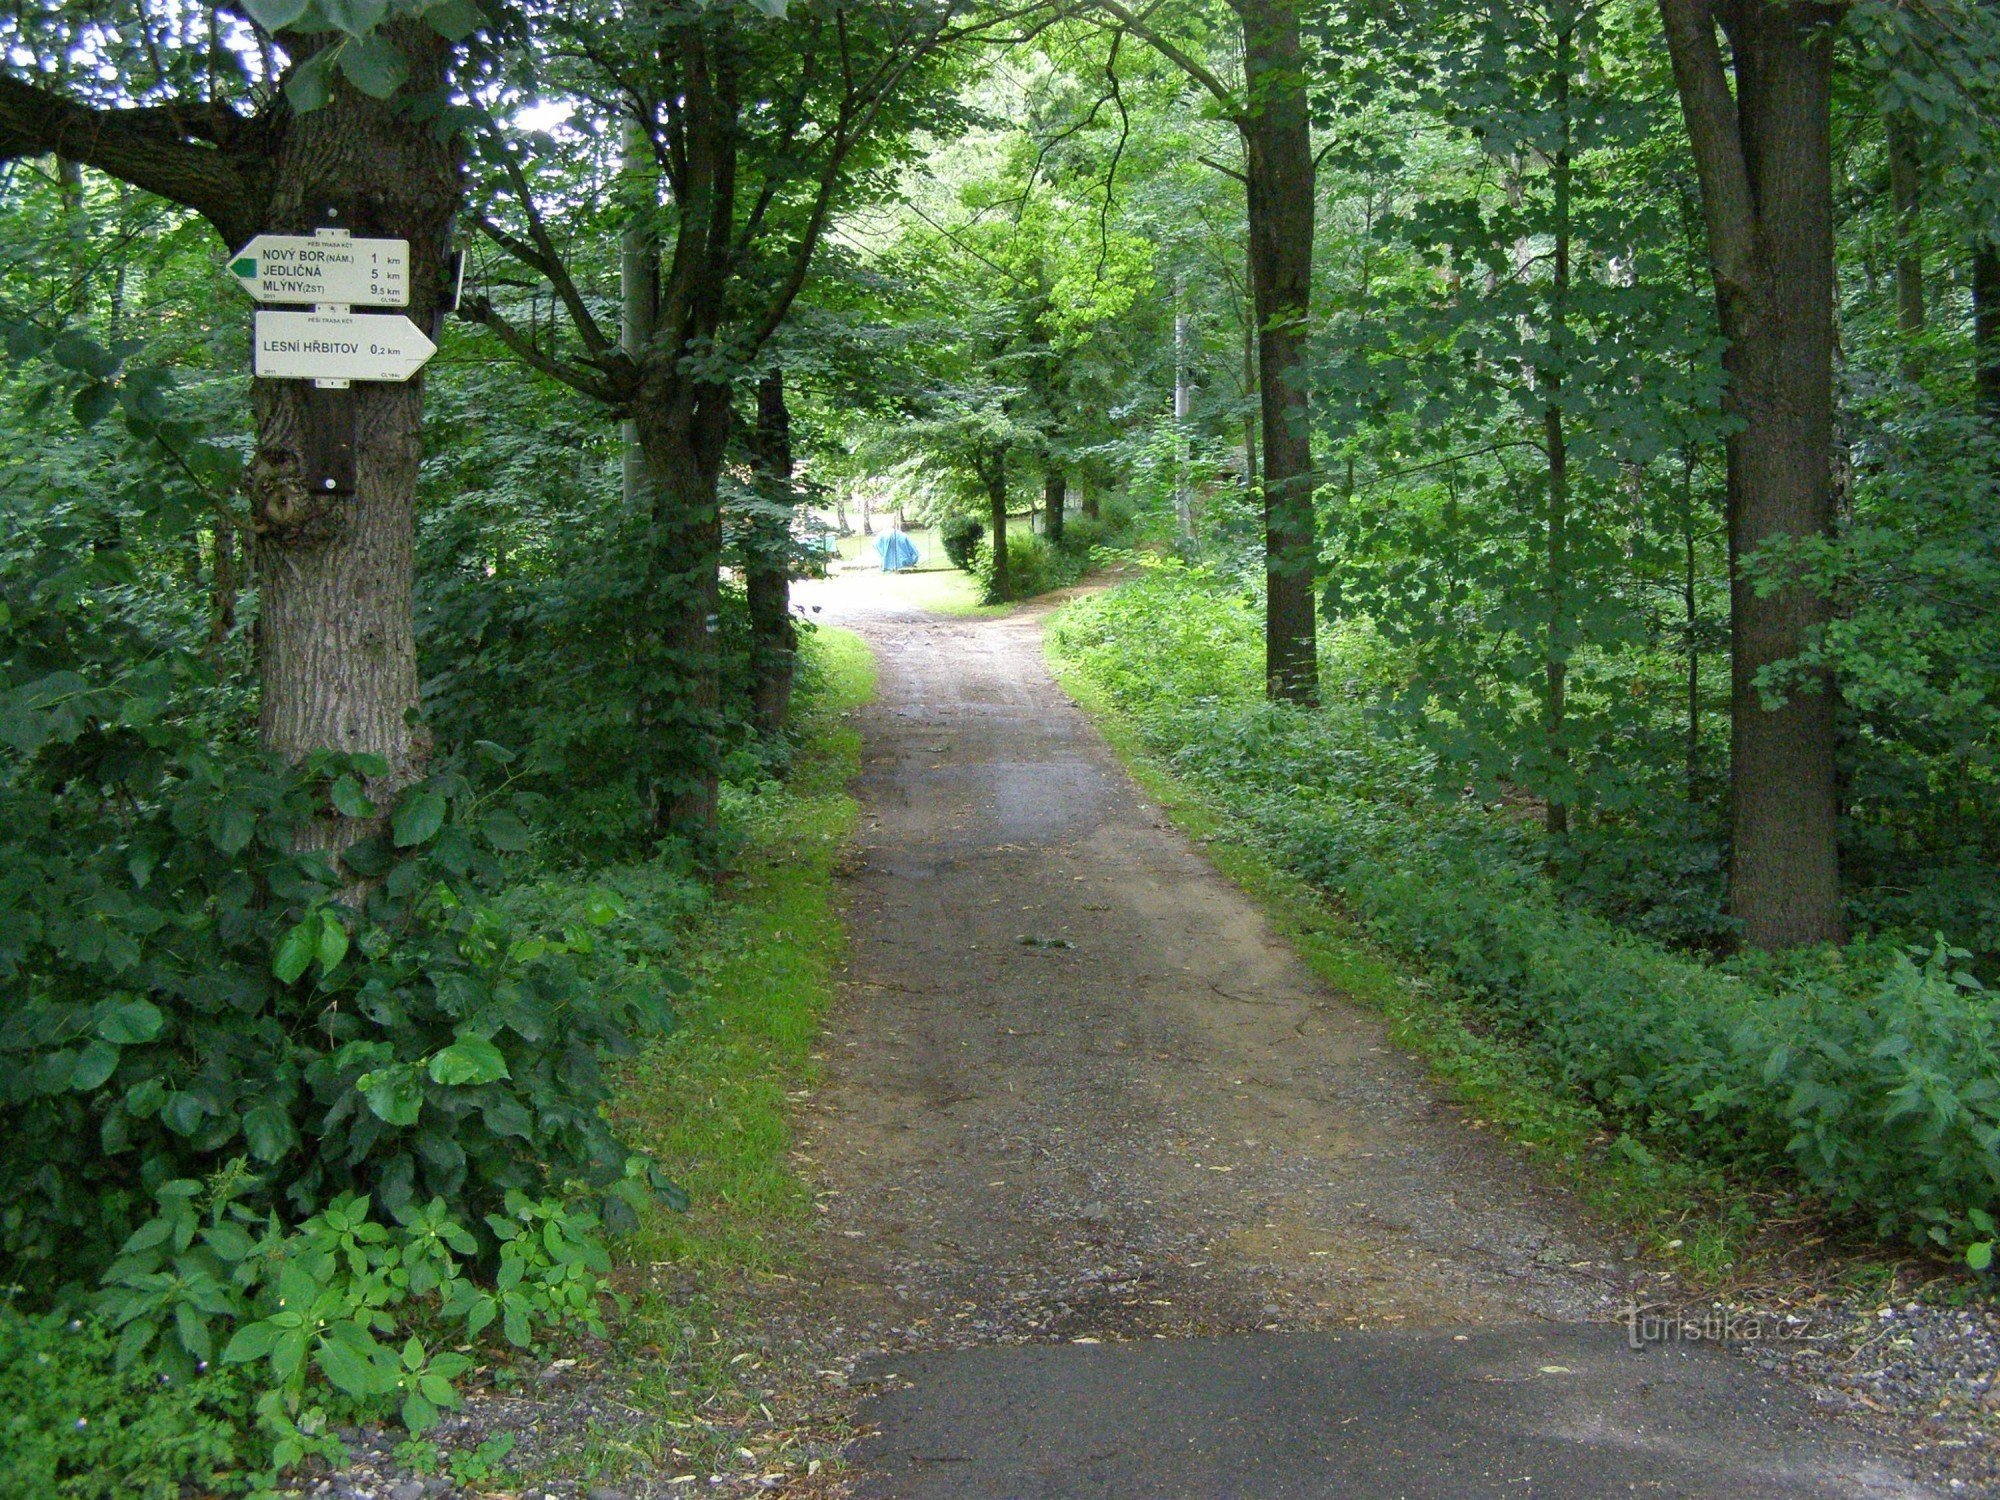 encruzilhada turística Nový Bor - perto do cemitério da floresta